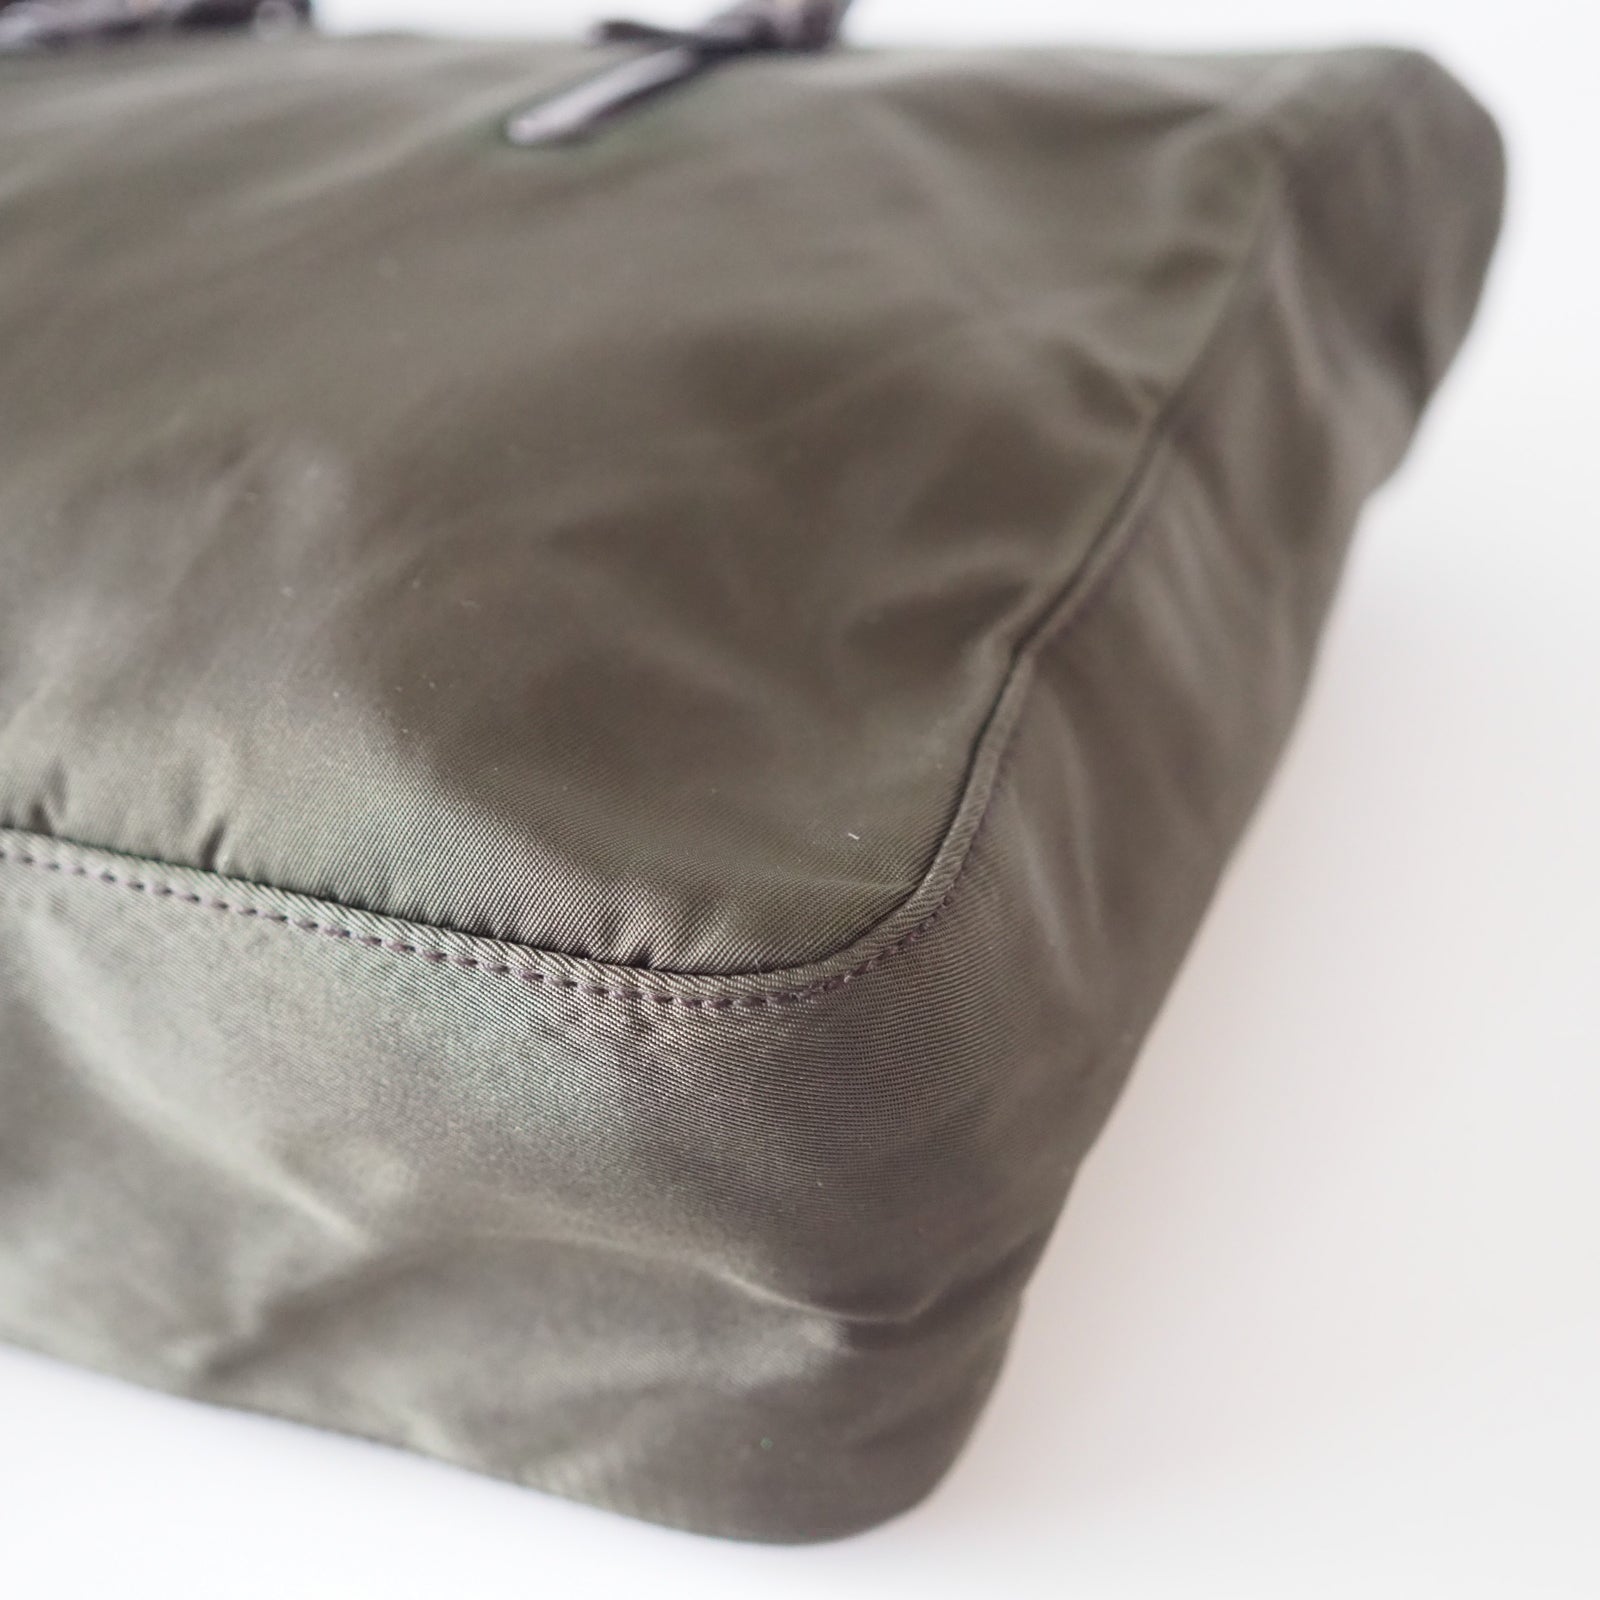 PRADA Nylon Plastic Chain Shoulder Bag